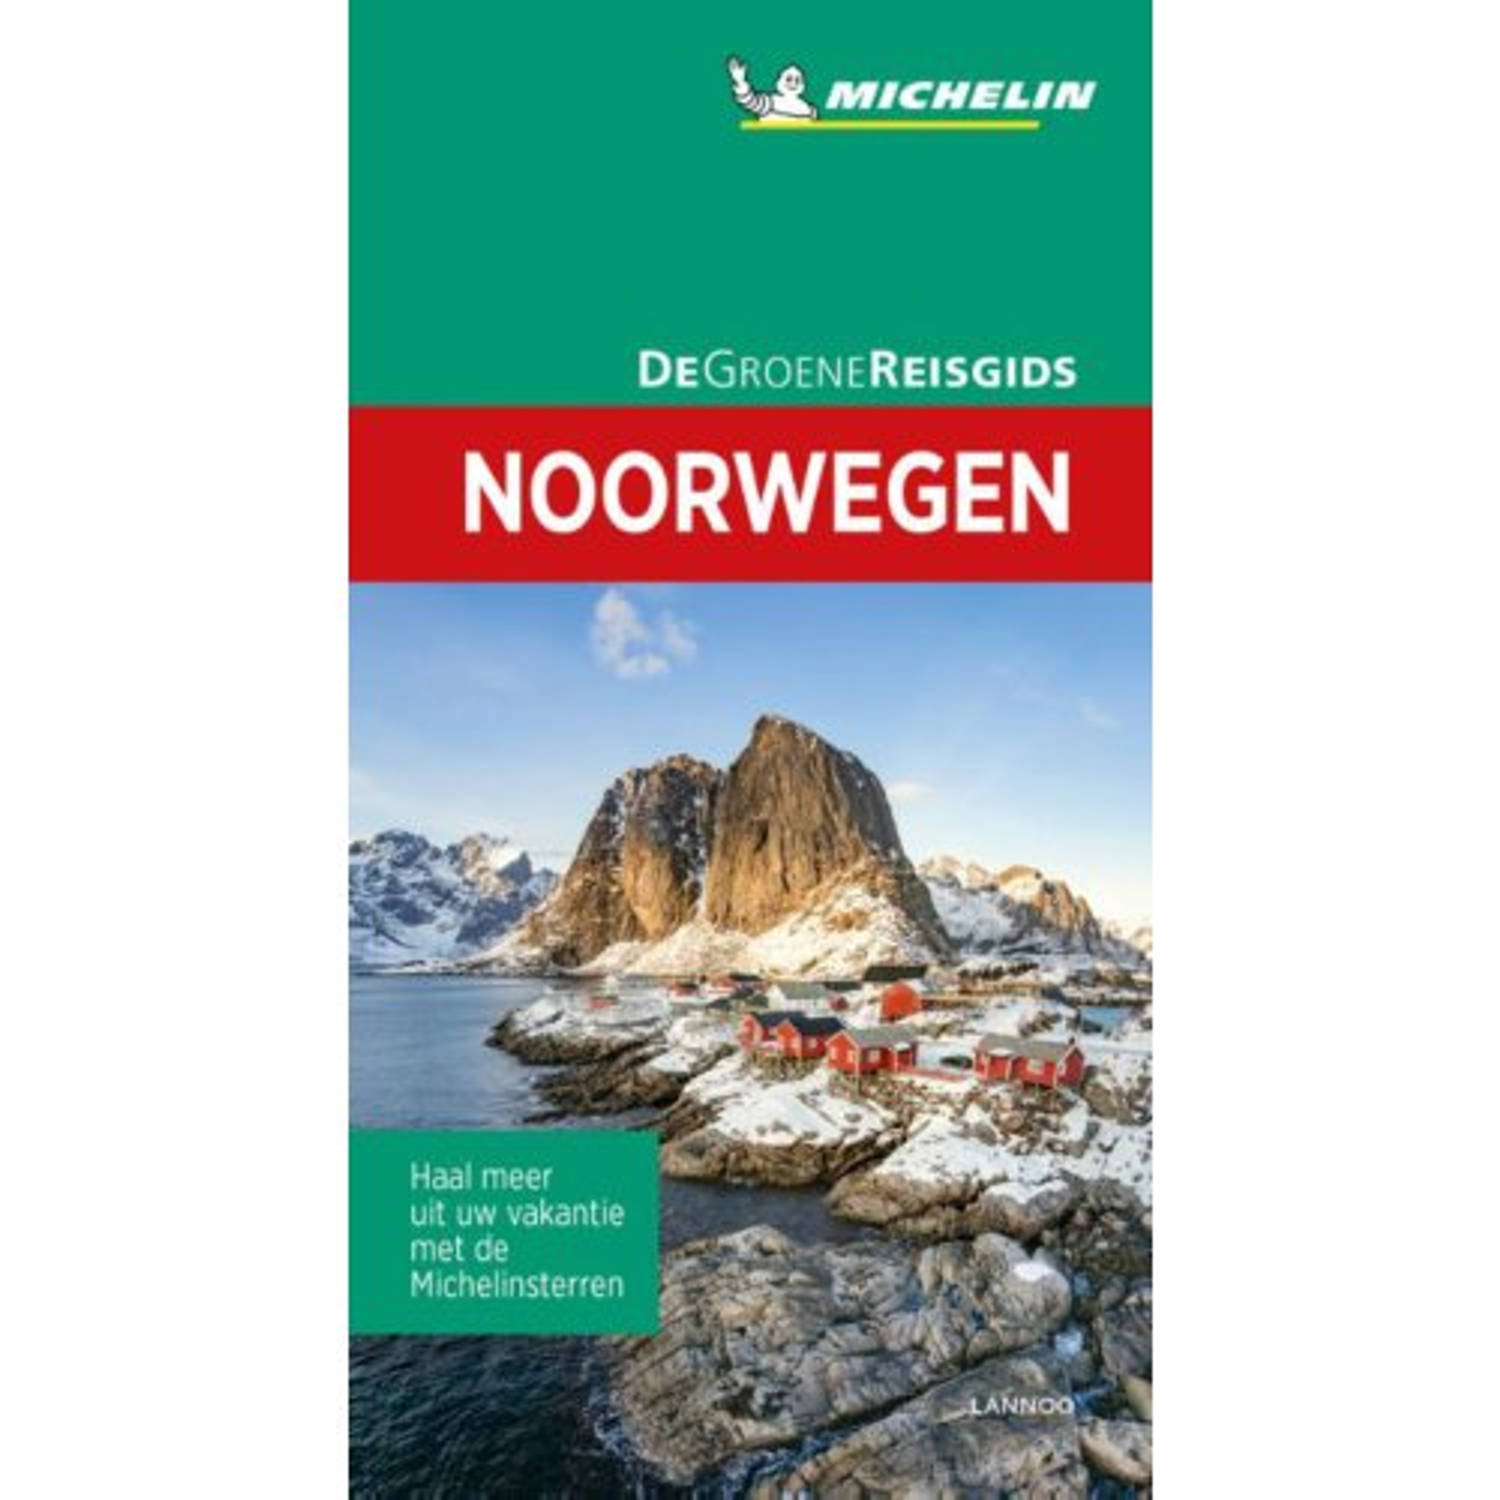 Noorwegen - De Groene Reisgids